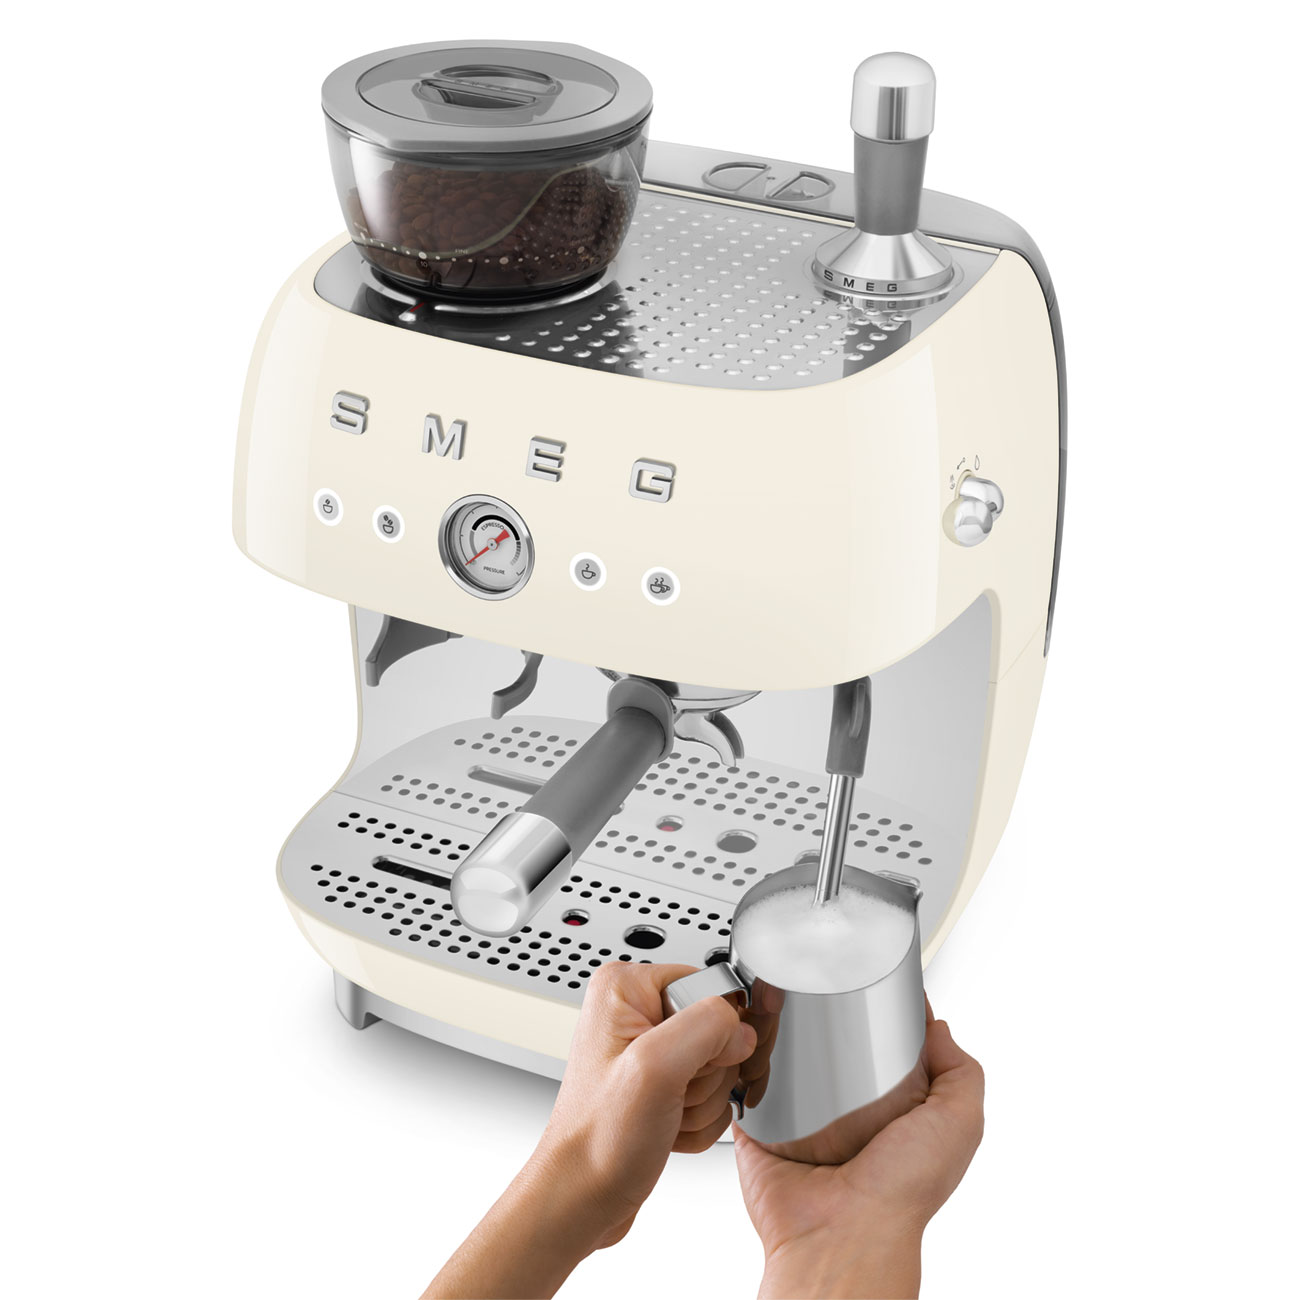 Smeg Creme Espressomaschine mit Siebträger_5